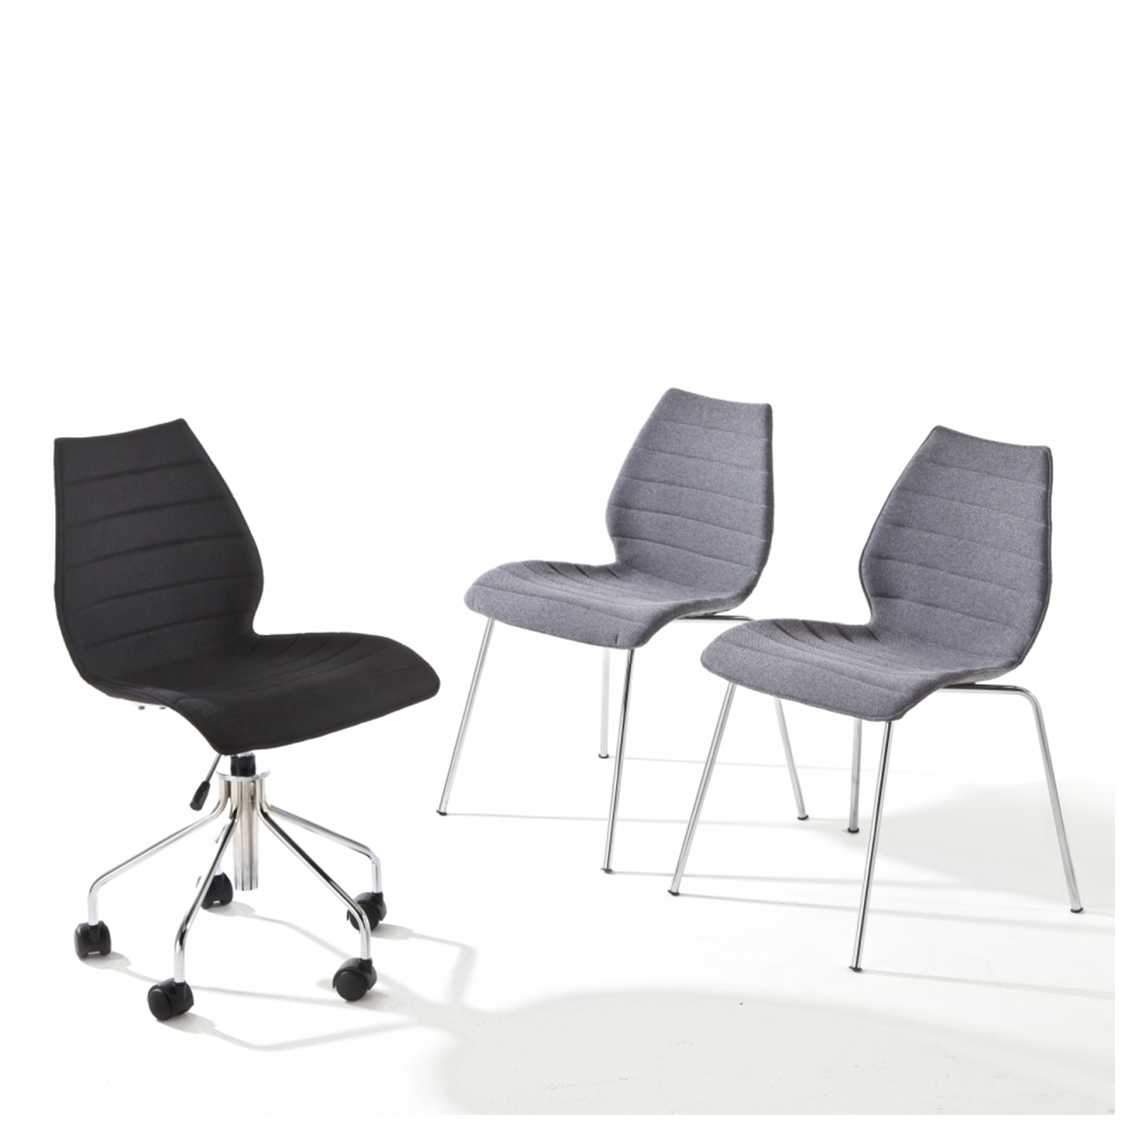 https://www.fundesign.nl/media/catalog/product/k/a/kartell-maui-soft-stoel_1.jpg